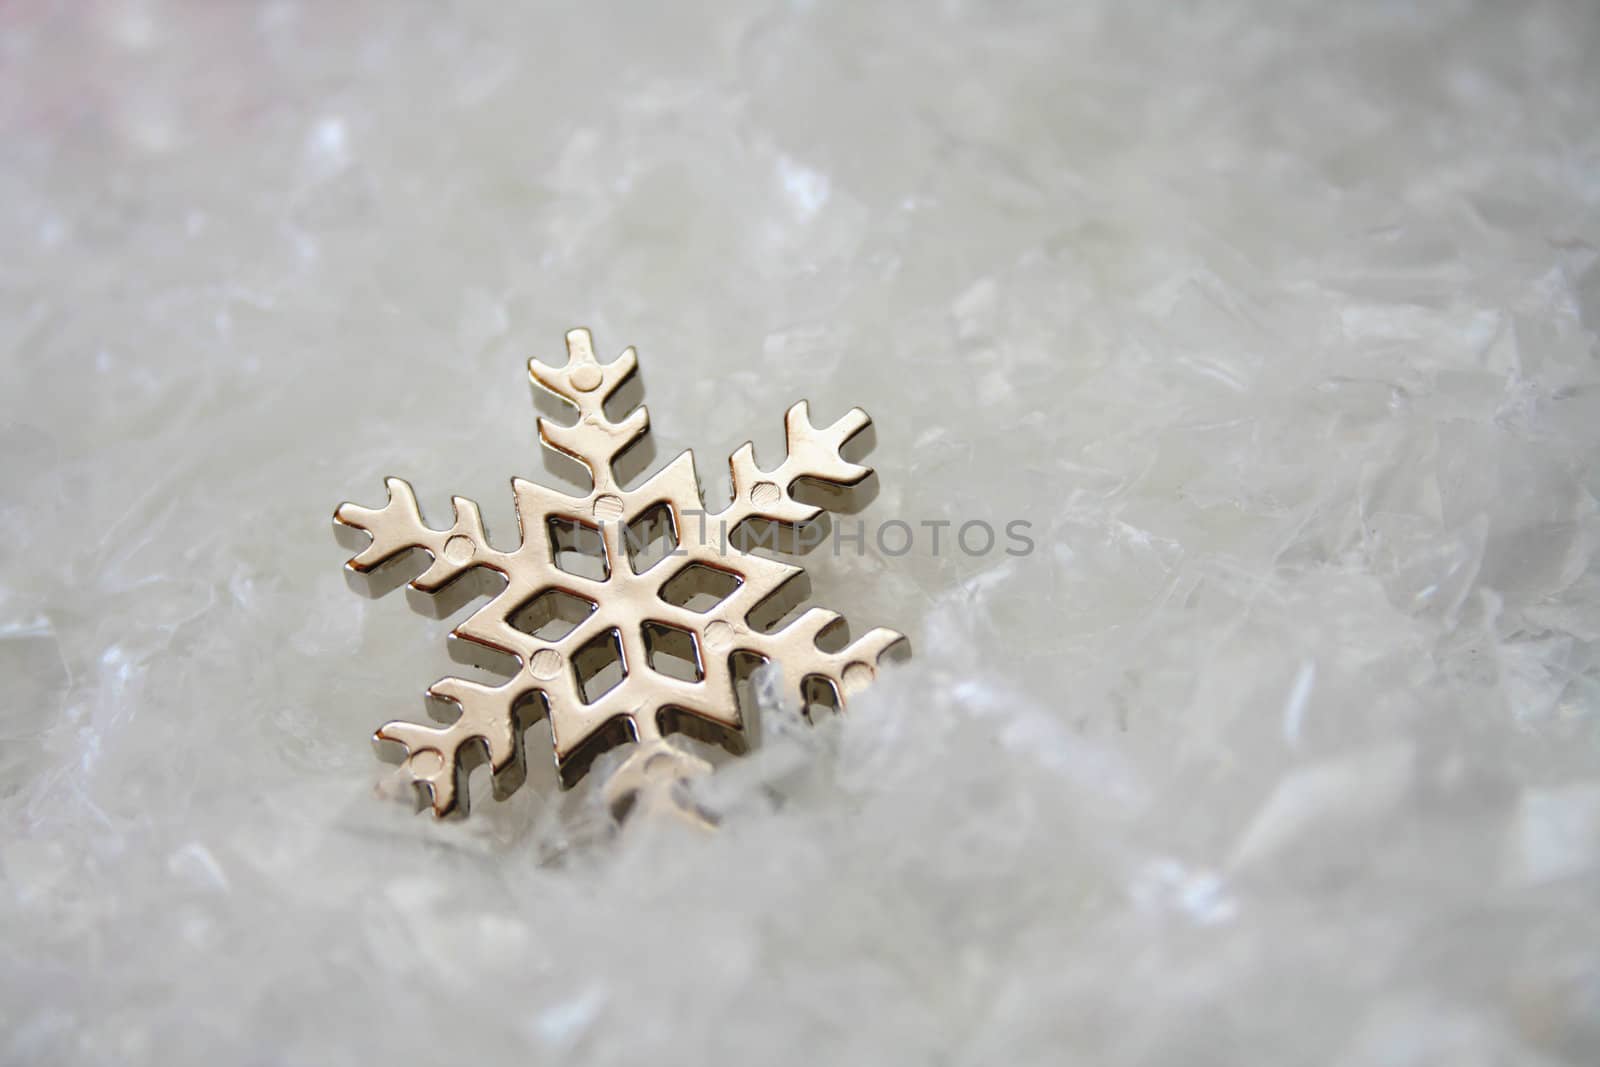 Snowflake by thephotoguy